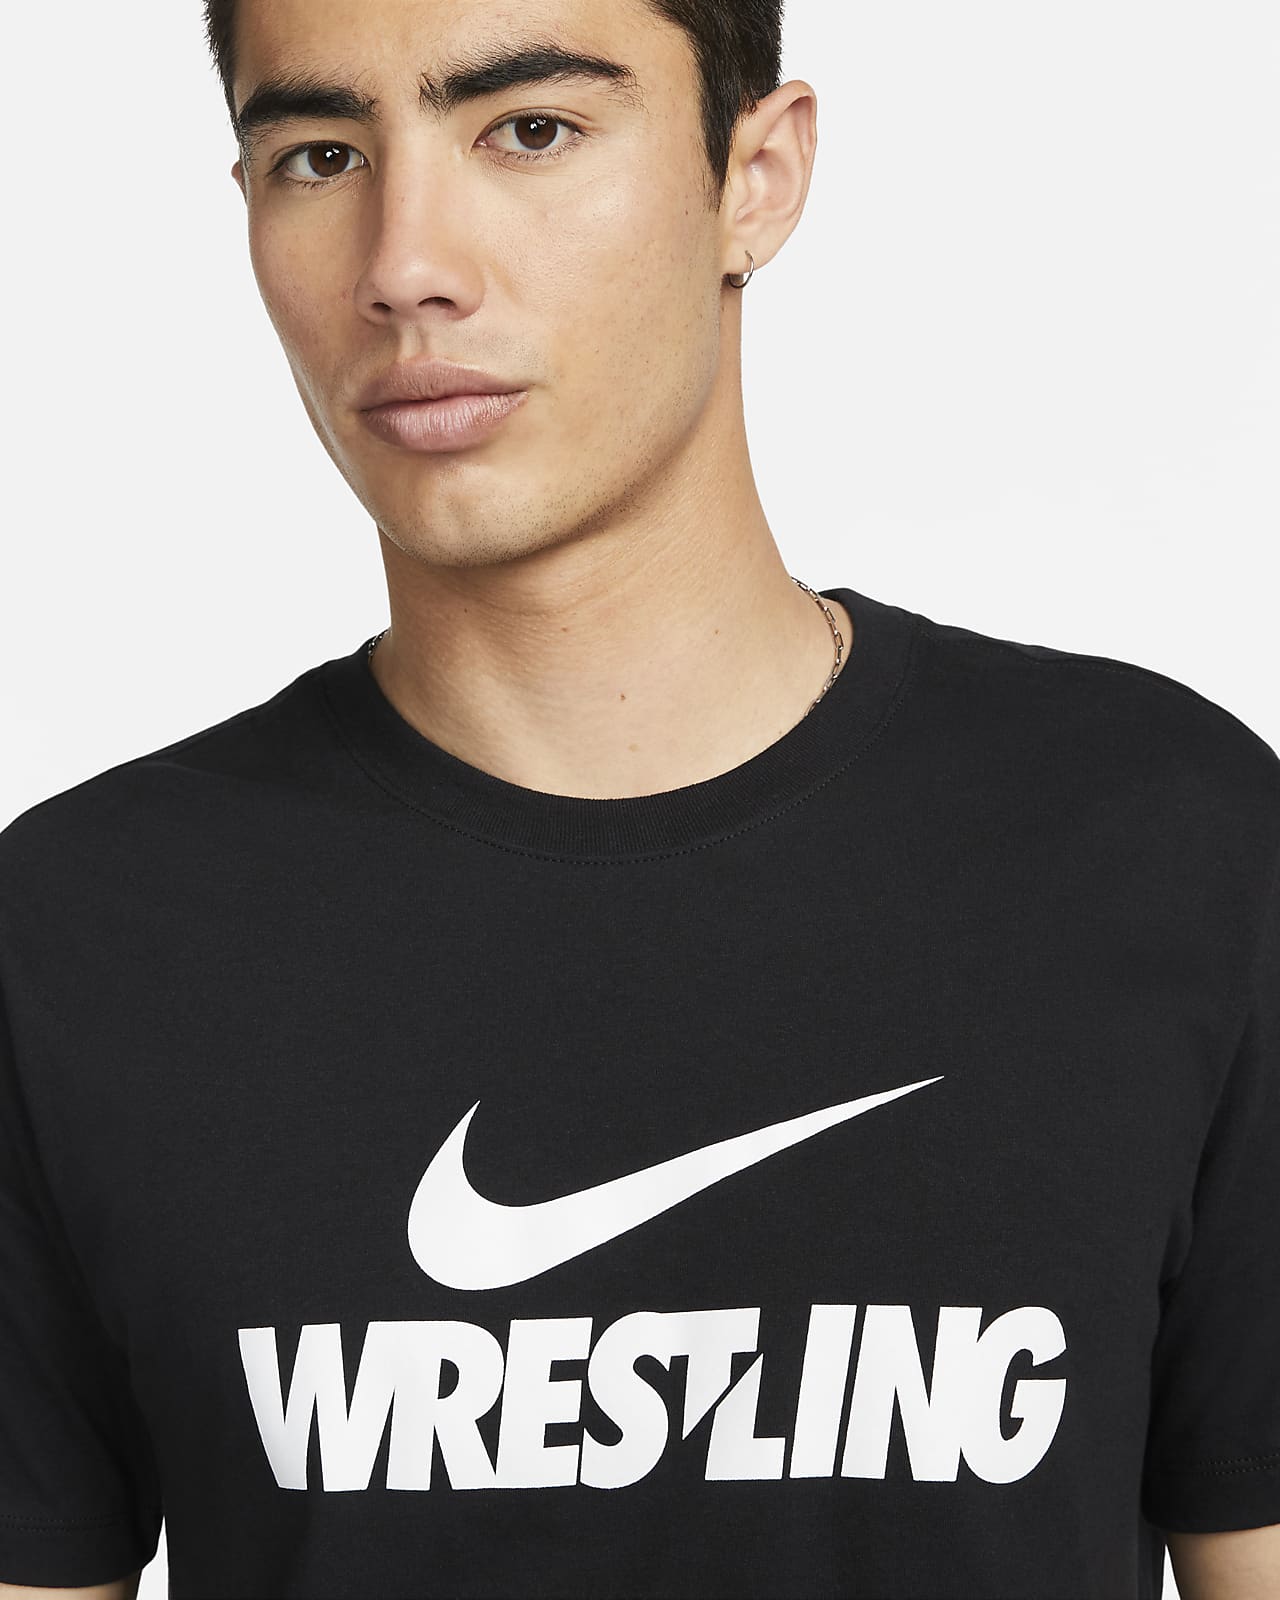 Nike Wrestling Men's T-Shirt.